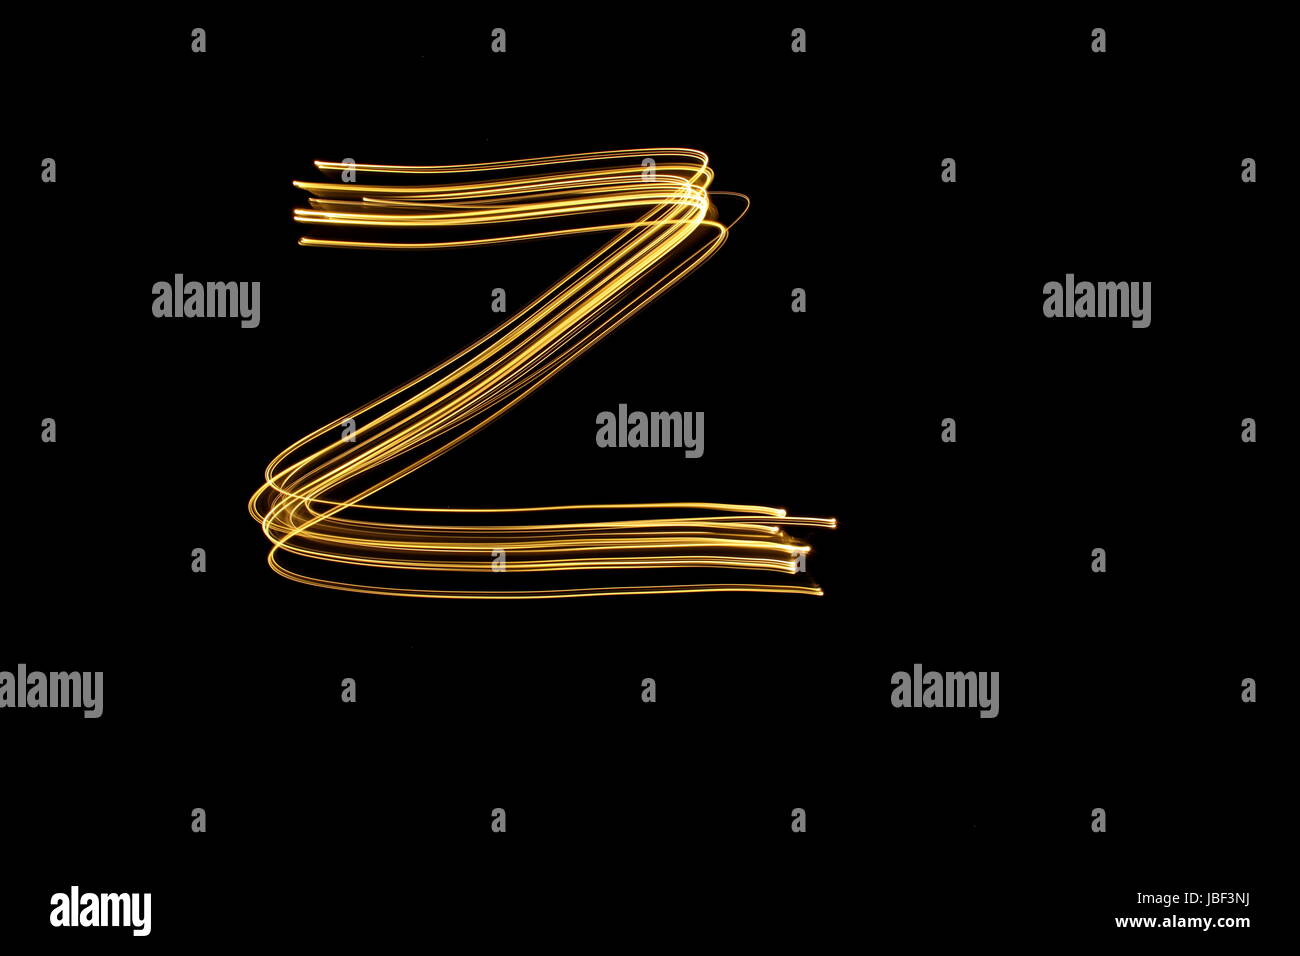 Gold Buchstabe Z, Licht-Malerei-Fotografie, Alphabet-Serie, vor schwarzem Hintergrund Stockfoto